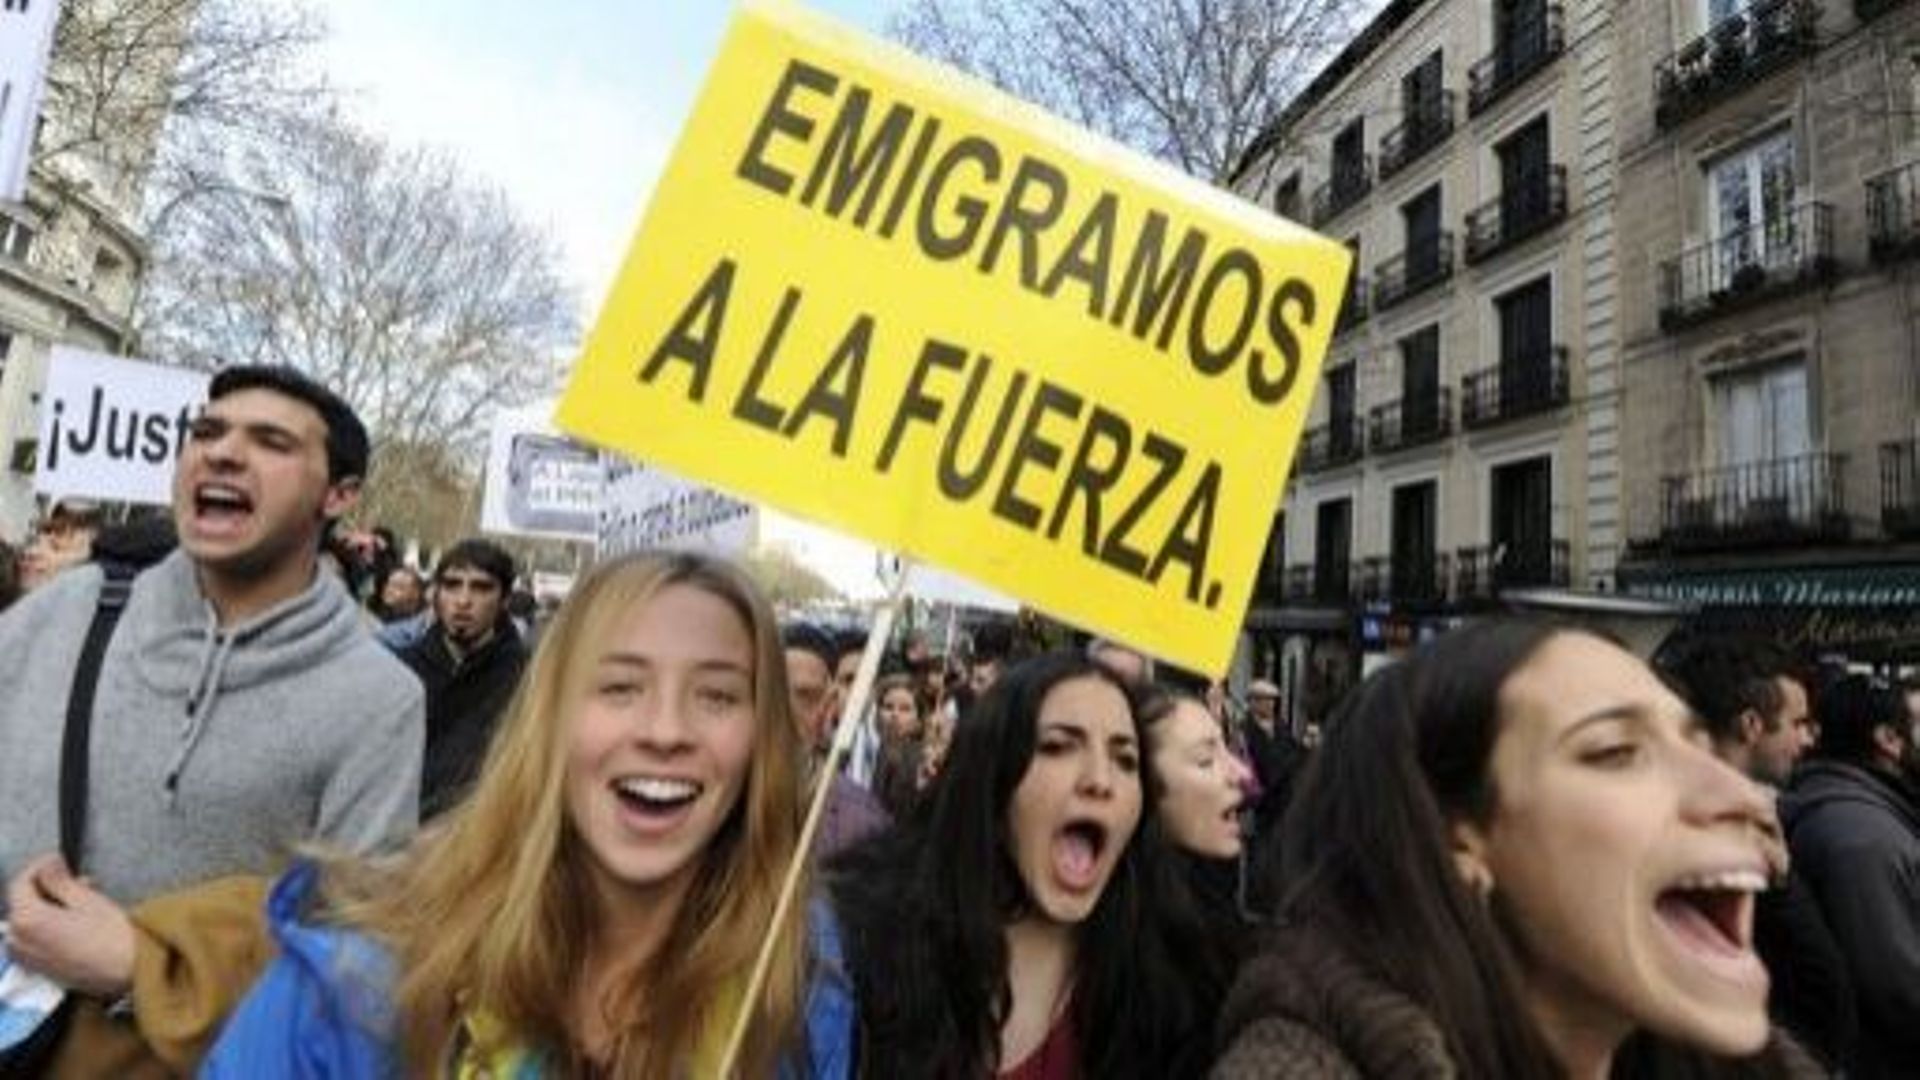 Espagne: des jeunes manifestent contre la crise qui les pousse à s'exiler